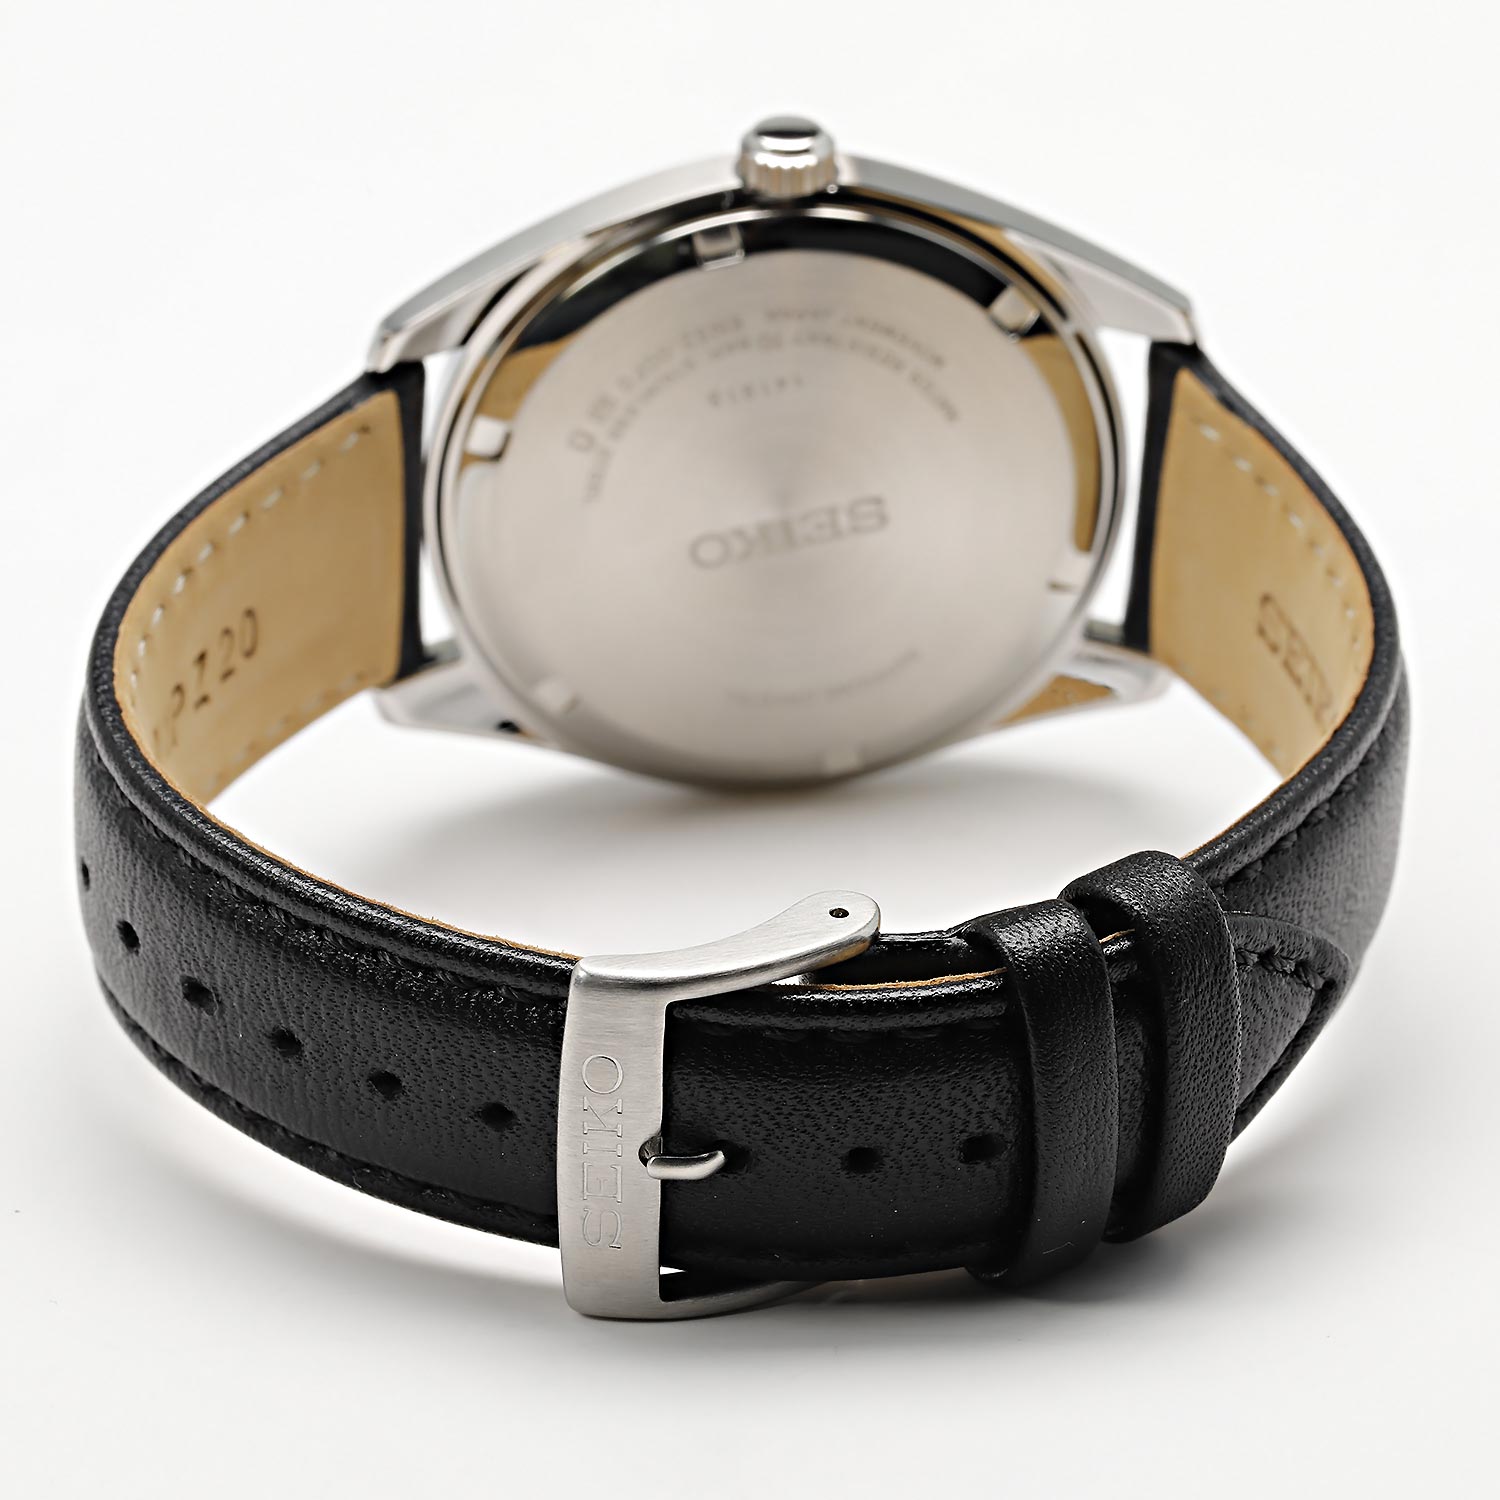 Наручные часы Seiko SUR461P1 — лучшей инструкция, цене, фото, описание характеристики, AllTime.ru в по купить интернет-магазине